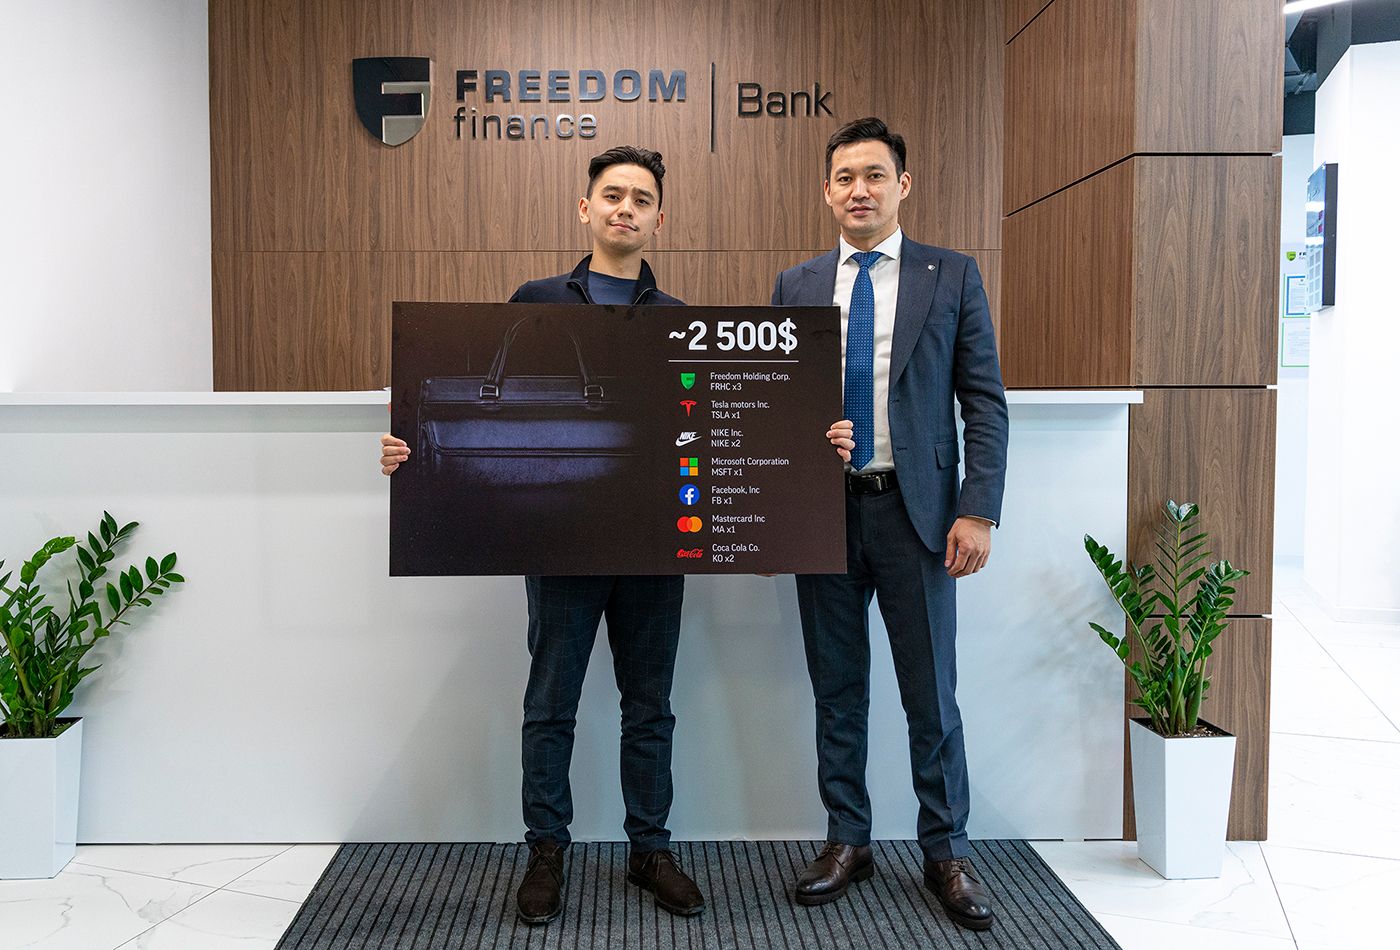 Сайт банк фридом финанс. Фридом Финанс банк. Freedom Finance карта. Казахстанский банк Freedom Finance.